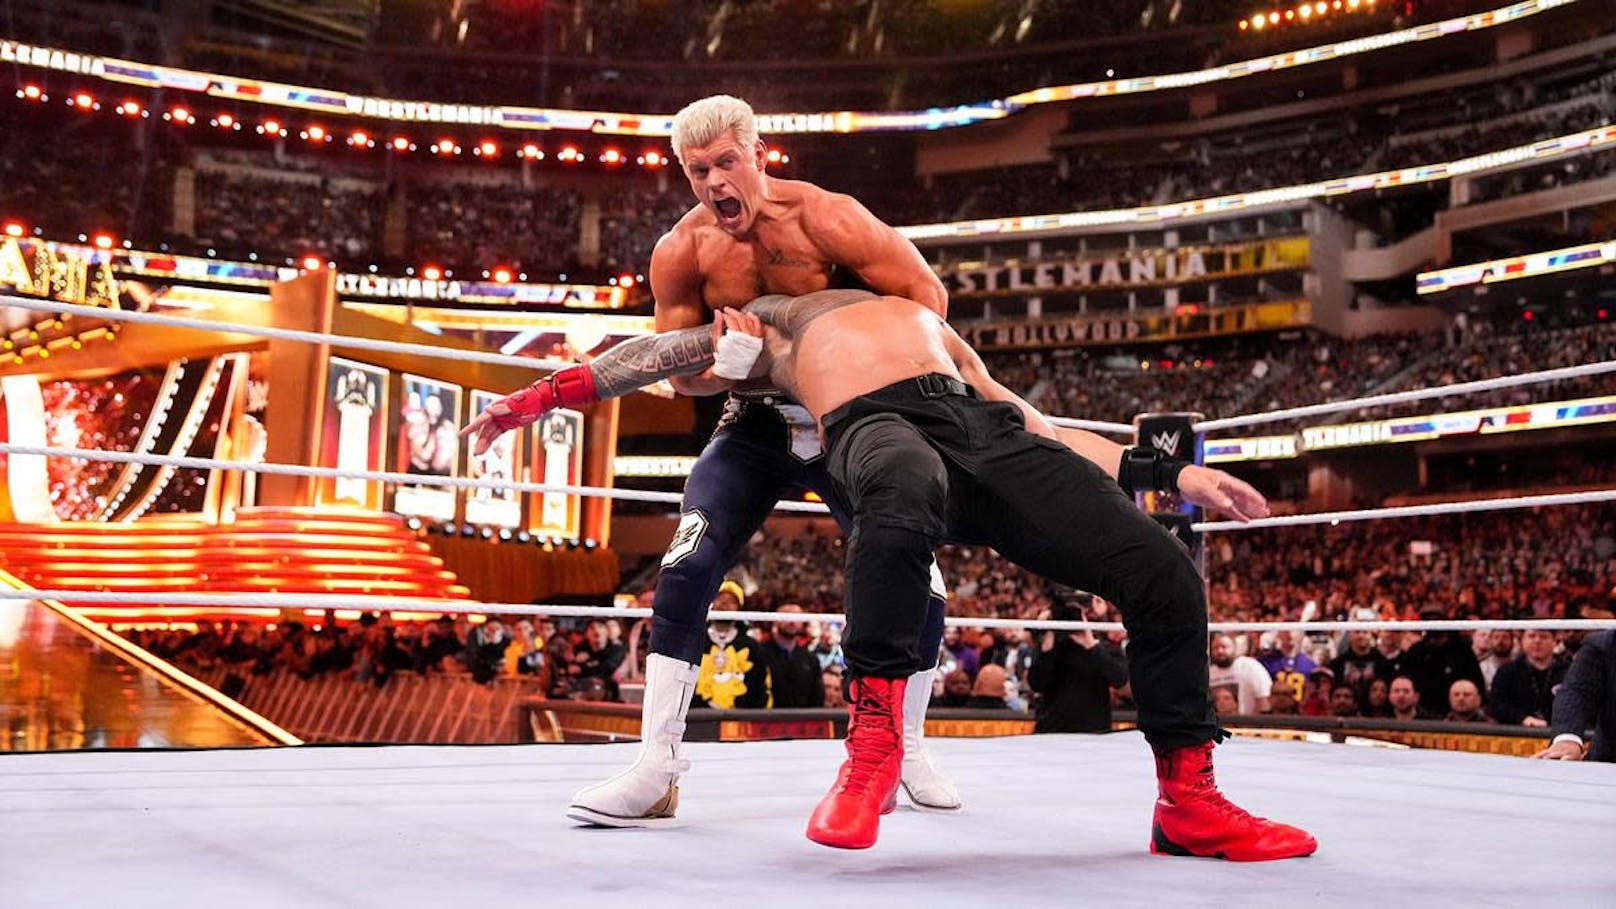 Endlich! Die WWE-Superstars kommen im Mai nach Wien